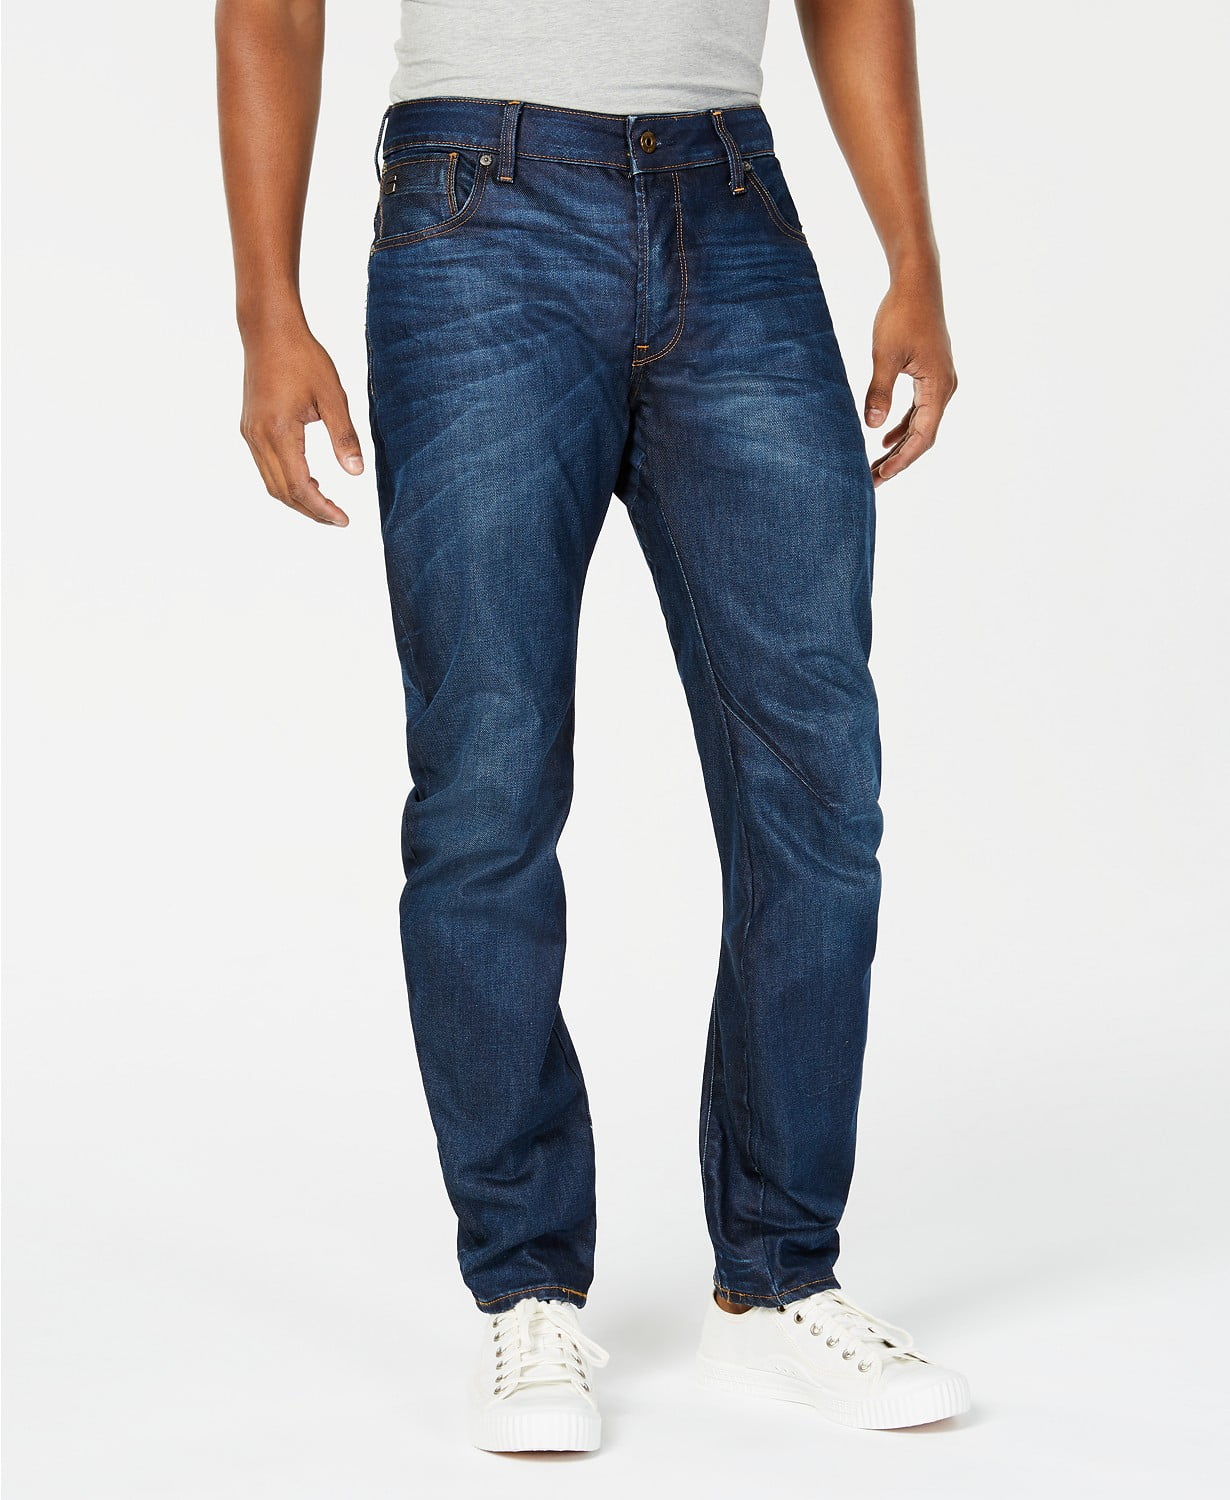 G-star - Raw Men's Jeans 30x30 Arc 3D Flat Front Slim-Fit 30 - Walmart ...